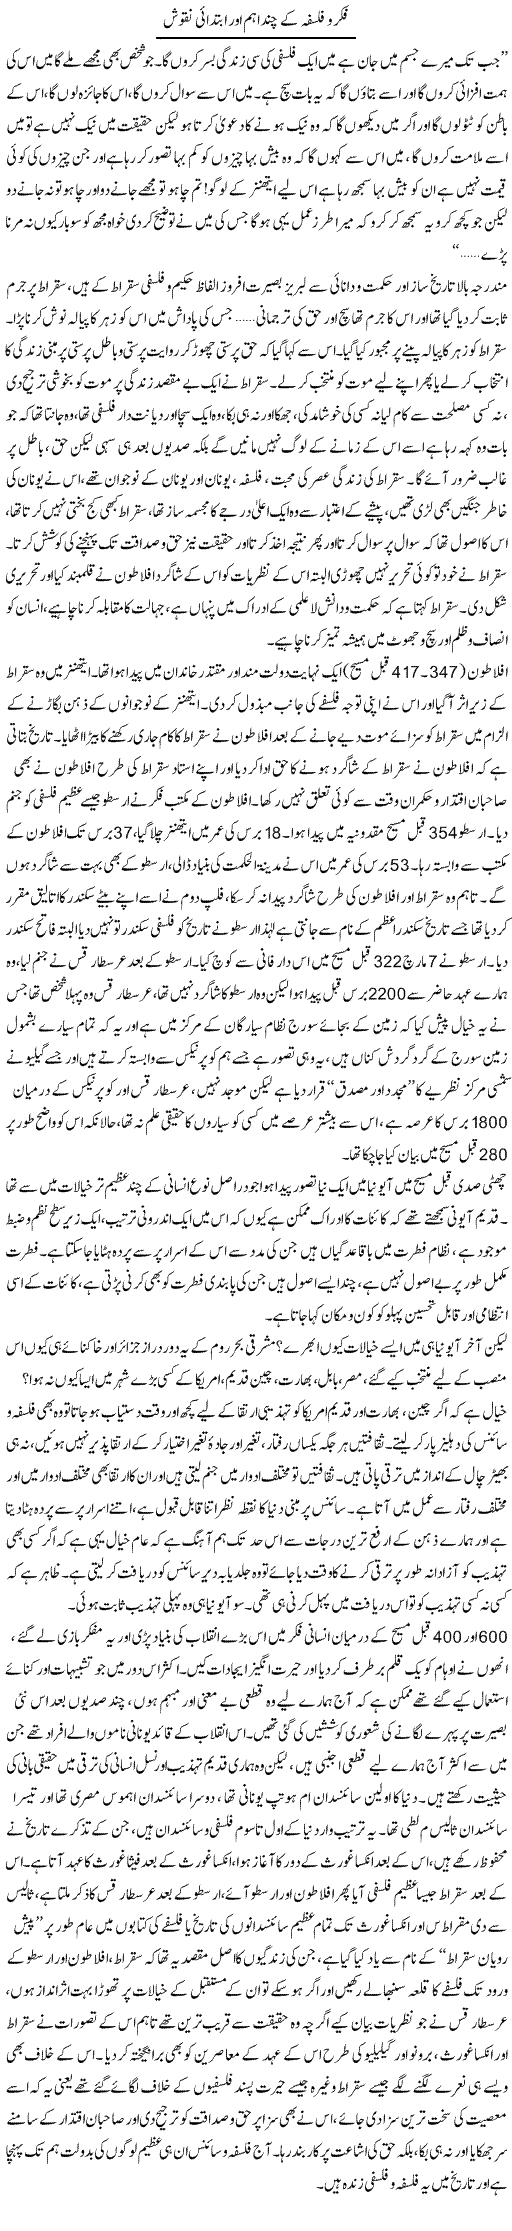 Fikar O Falsafah Ke Chand Ahem Aur Ibtidai Naqoosh | Dr. Muhammad Tayyab Khan Singhanvi | Daily Urdu Columns